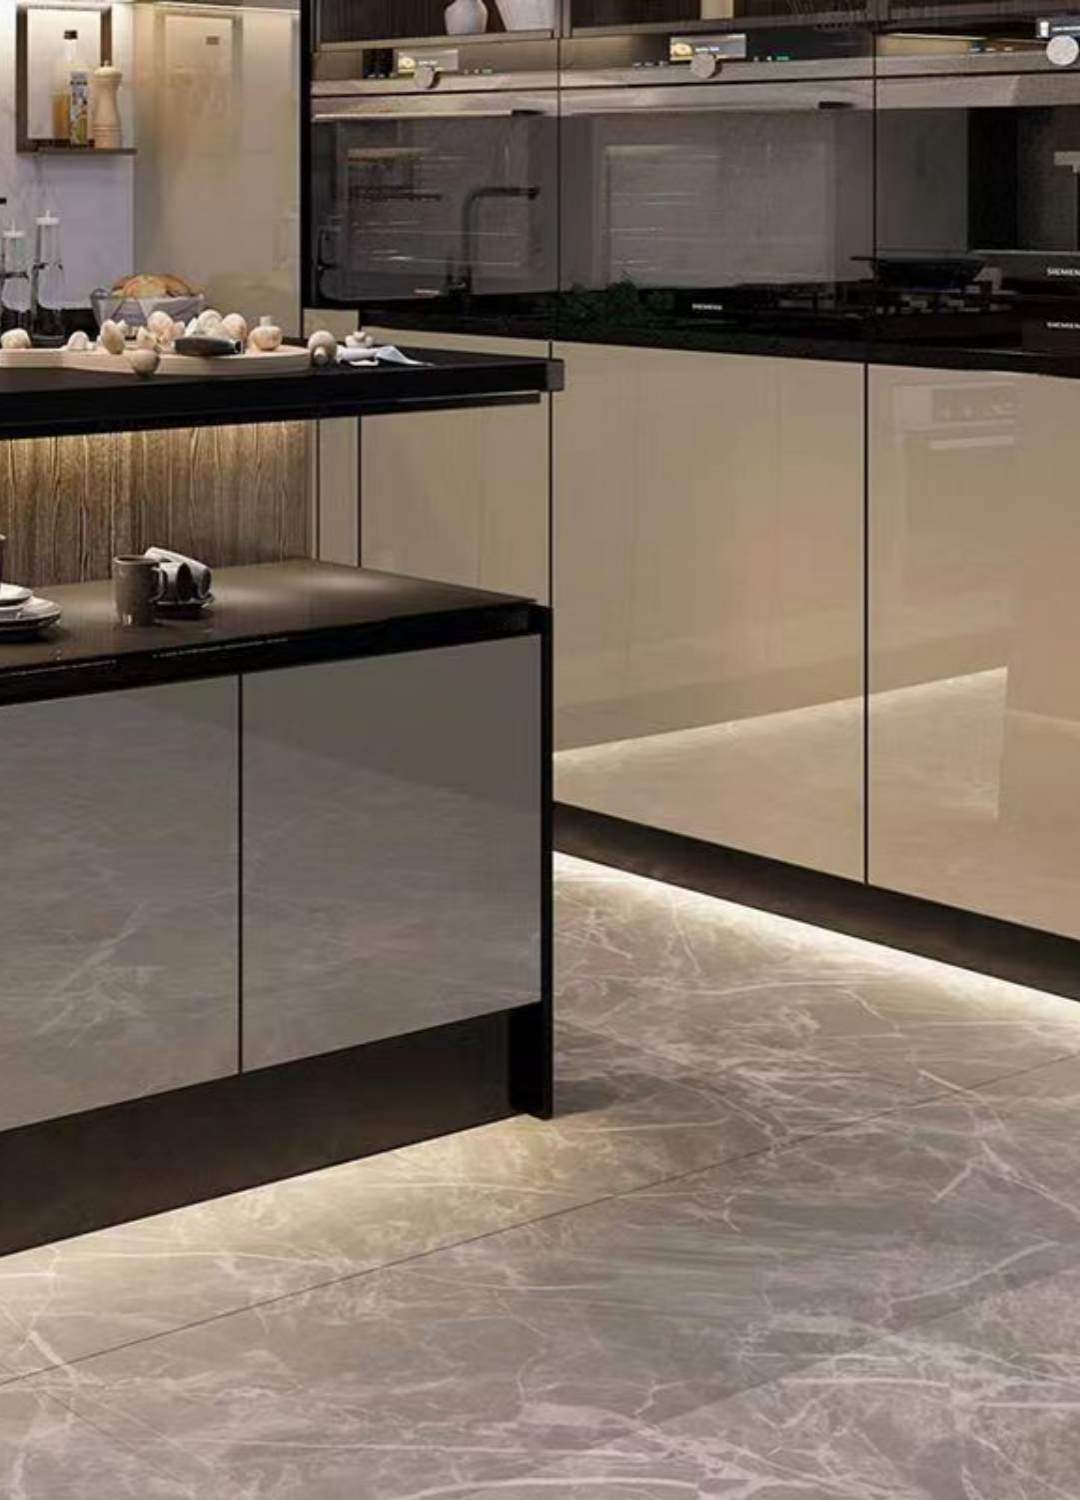 Cocina elegante - Decoración con tiras de luz instaladas bajo los armarios de una cocina moderna, que proporcionan una práctica iluminación de trabajo y un elegante acento.